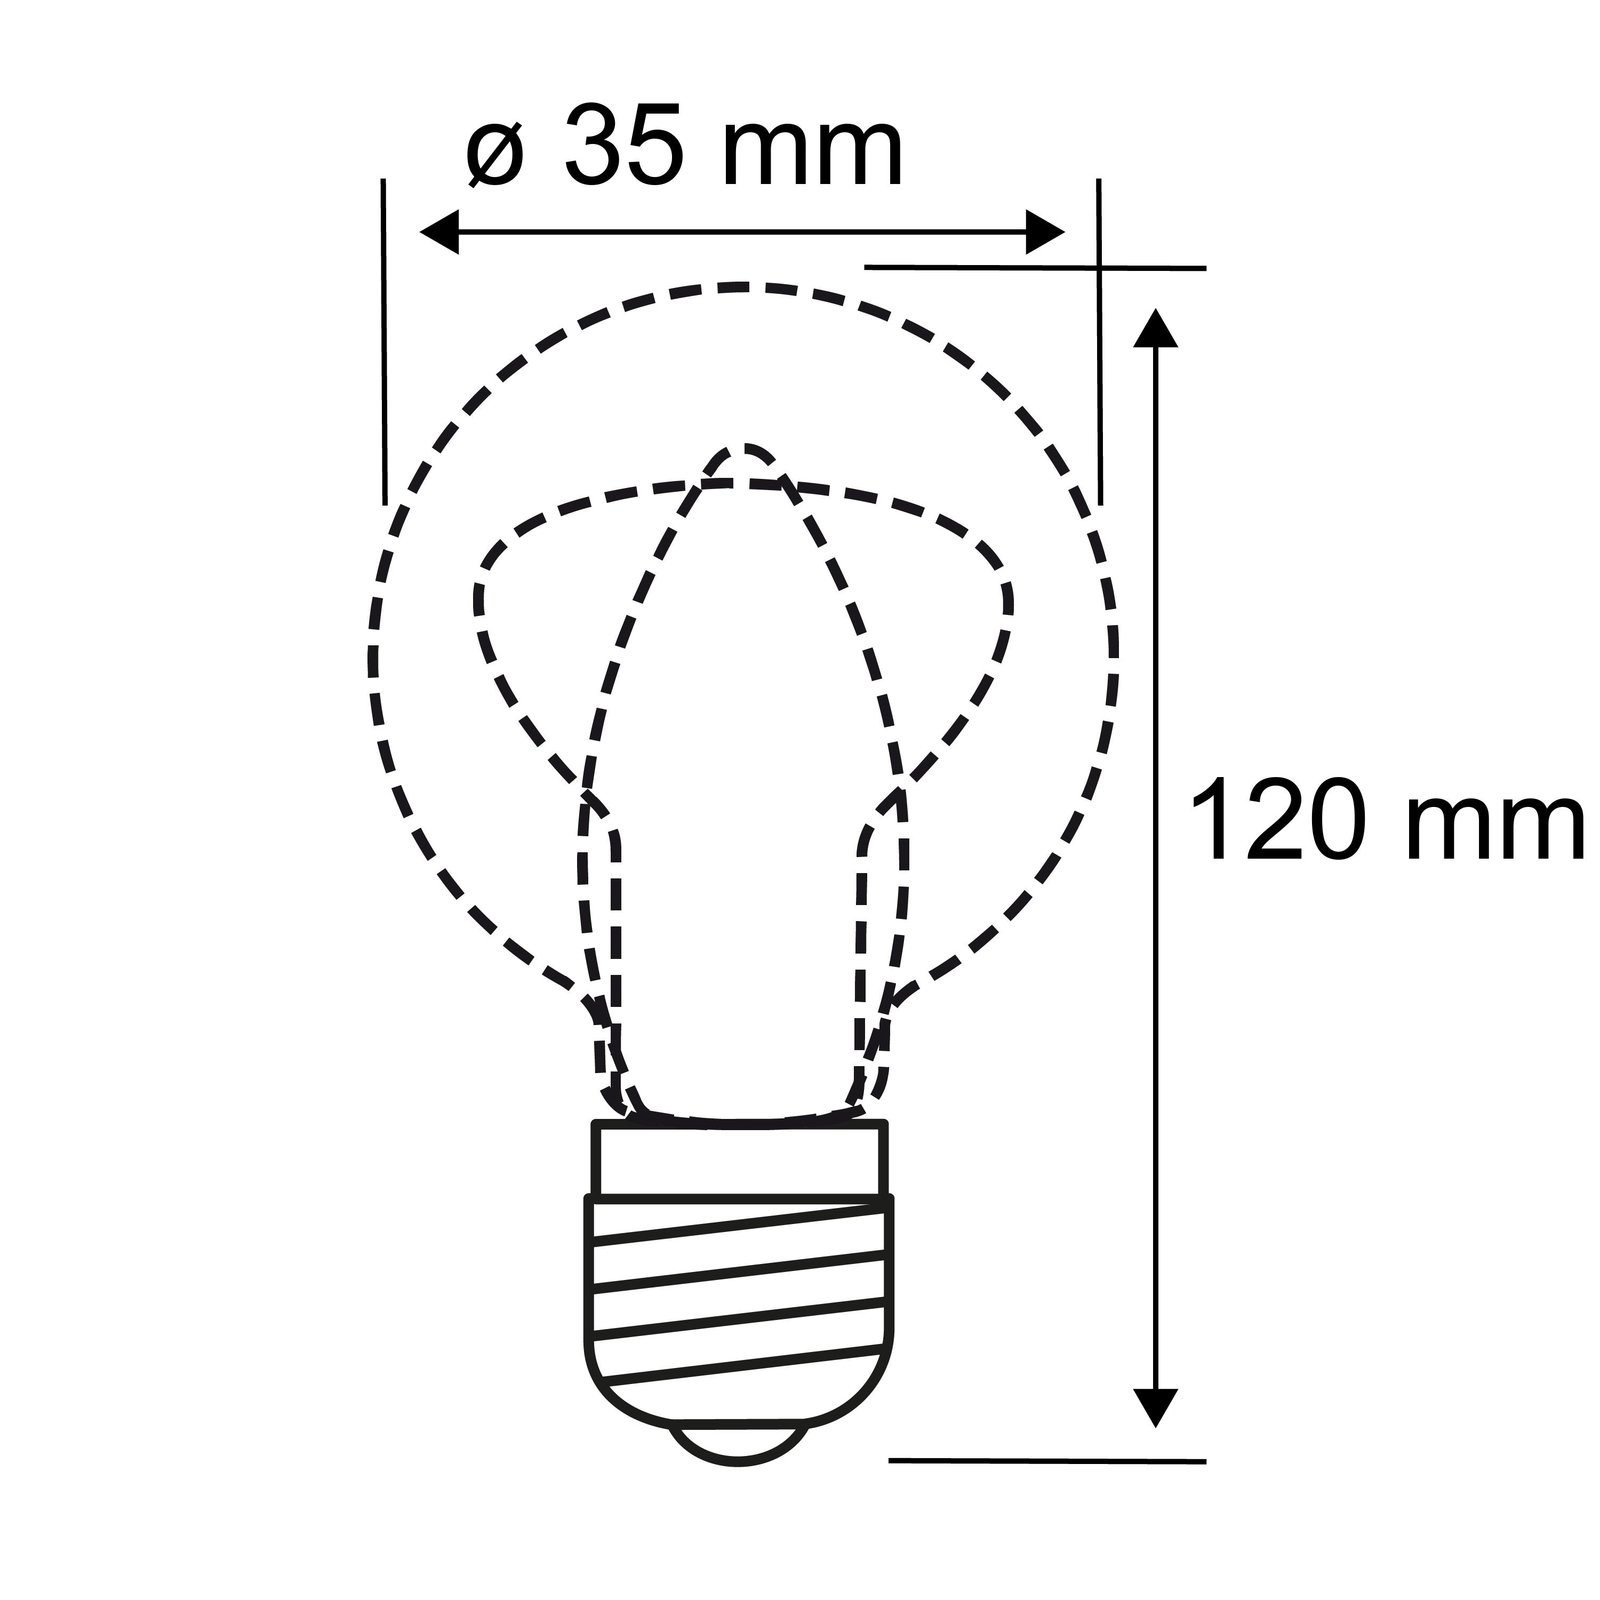 LED-Kerzenlampe E14 2,8W 2.700K Windstoß Filament